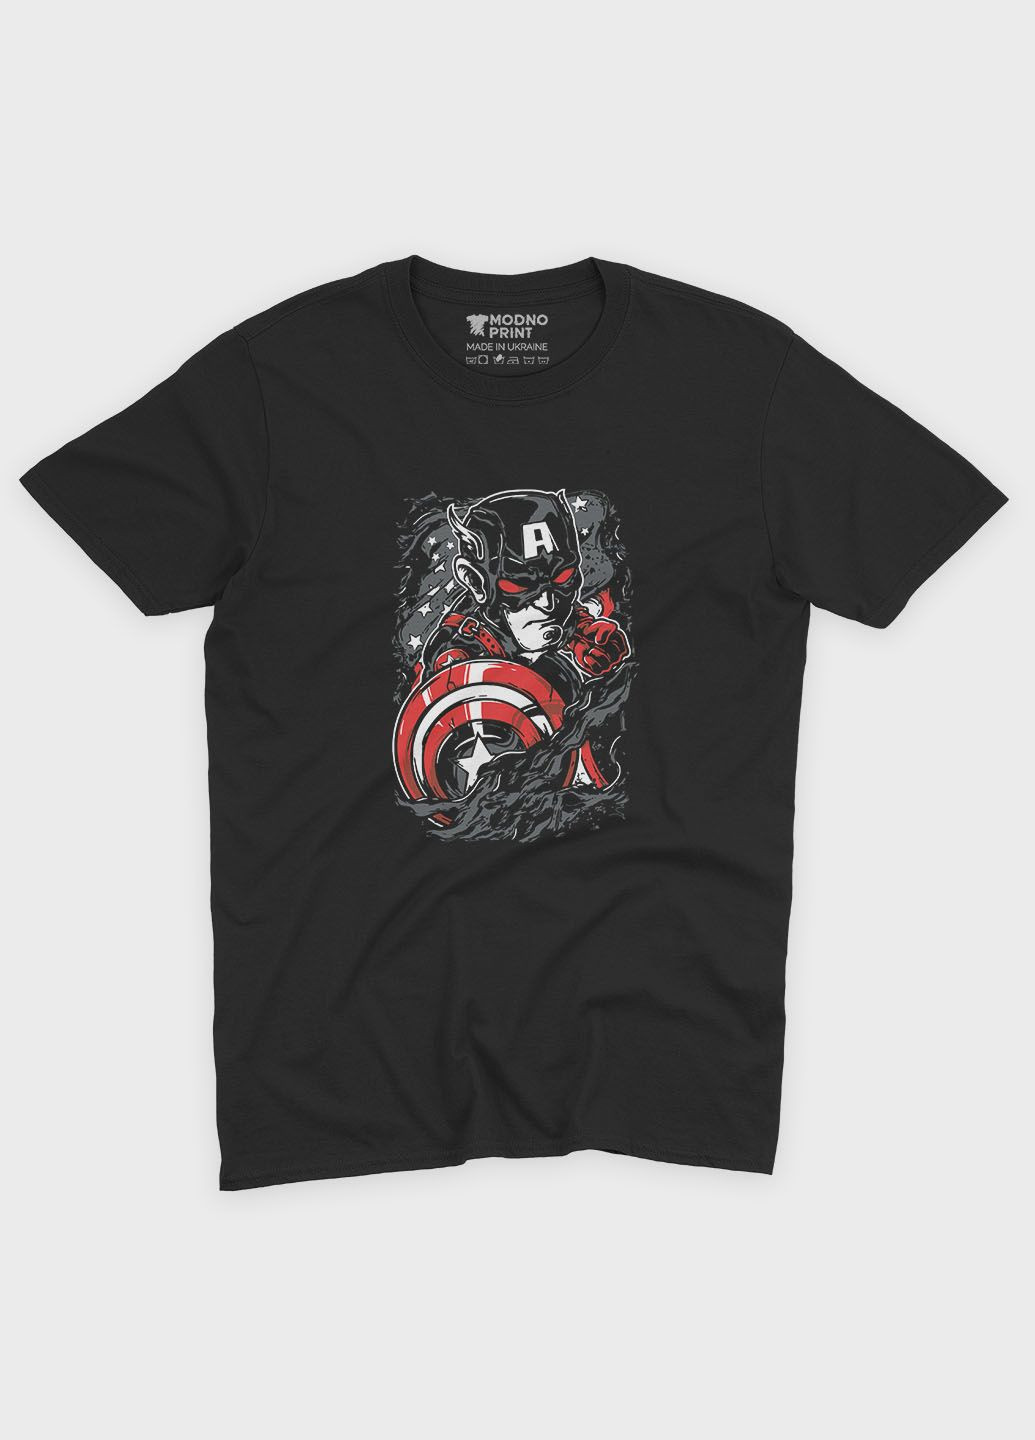 Чорна демісезонна футболка для дівчинки з принтом супергероя - капітан америка (ts001-1-gl-006-022-013-g) Modno